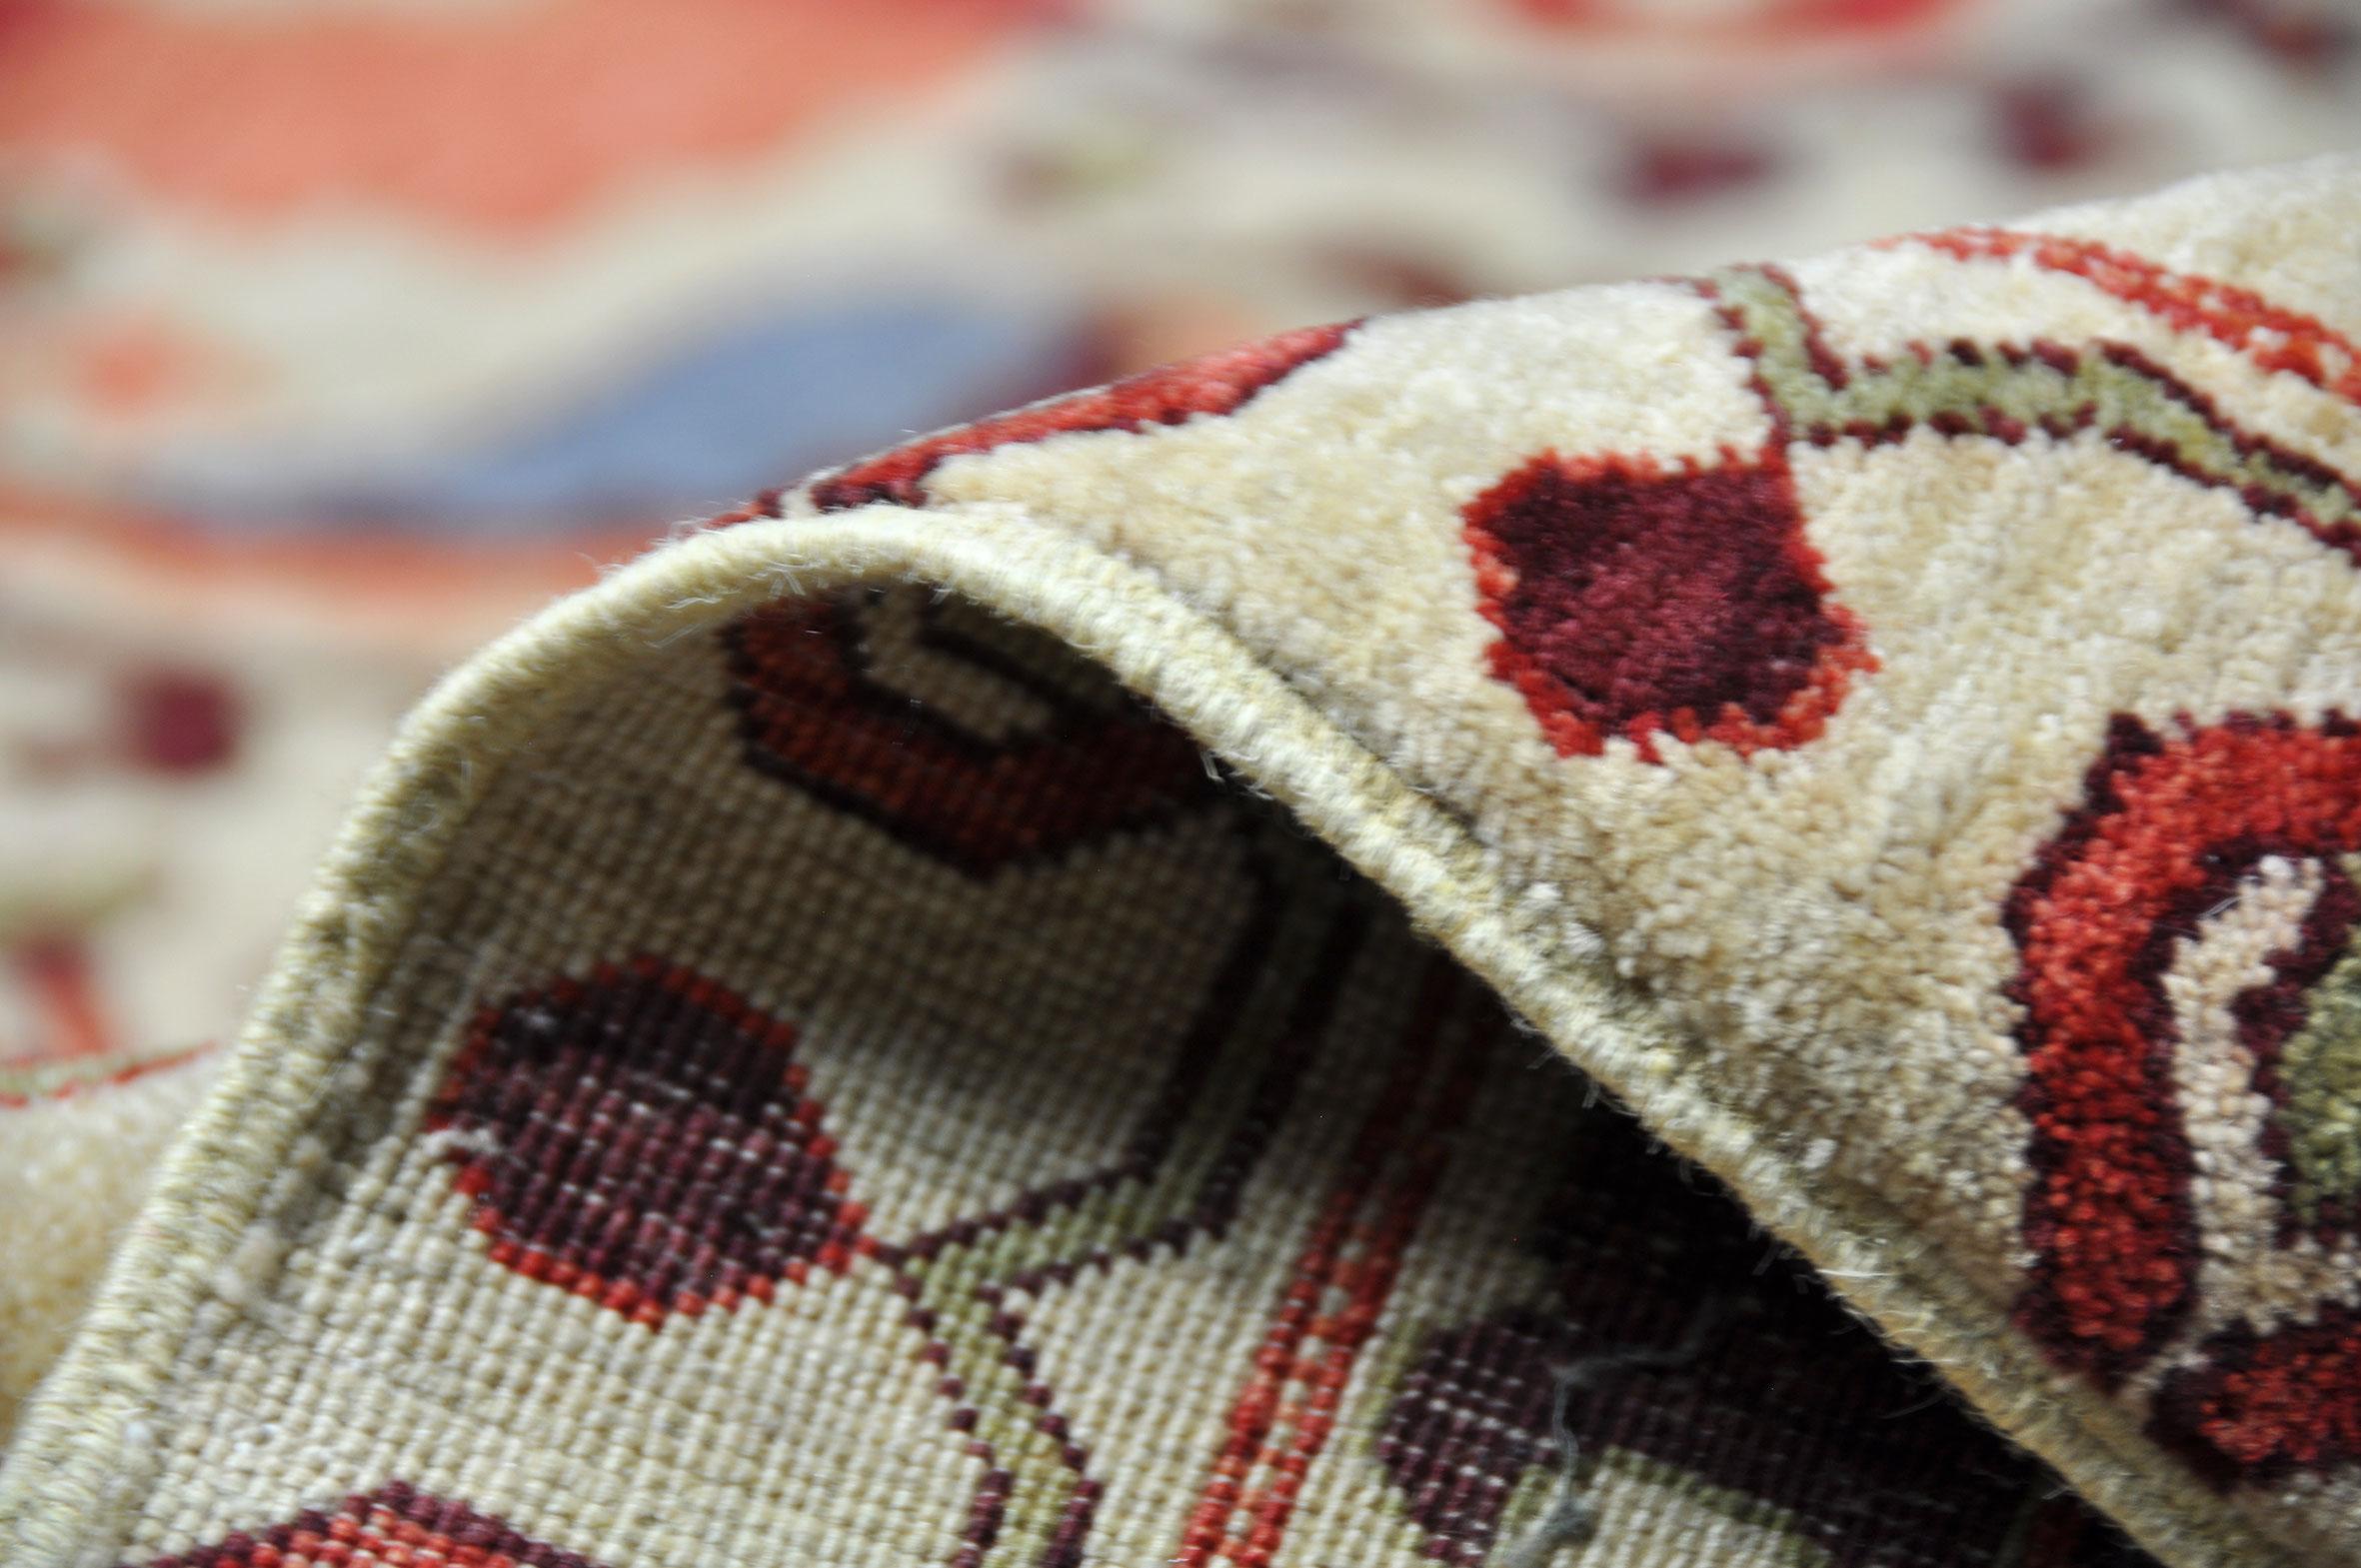 Rug - Carpet - Hand Knotted Wool in Red and Brown Jugendstil Tabriz 274 x 388 cm For Sale 5